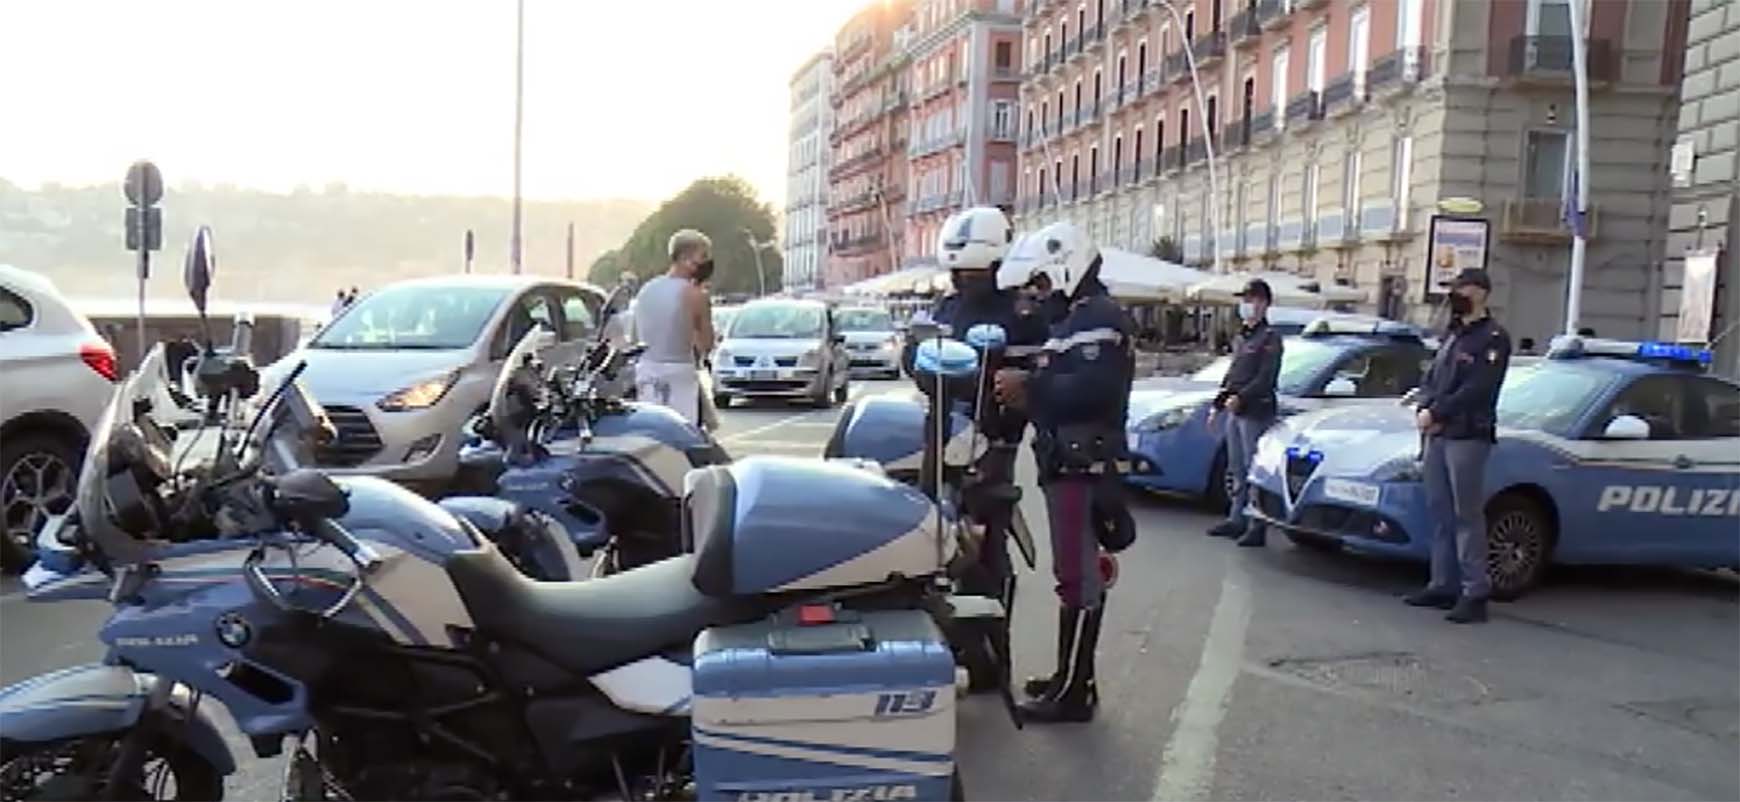 Napoli, controlli interforze sul Lungomare: oltre 100 identificati